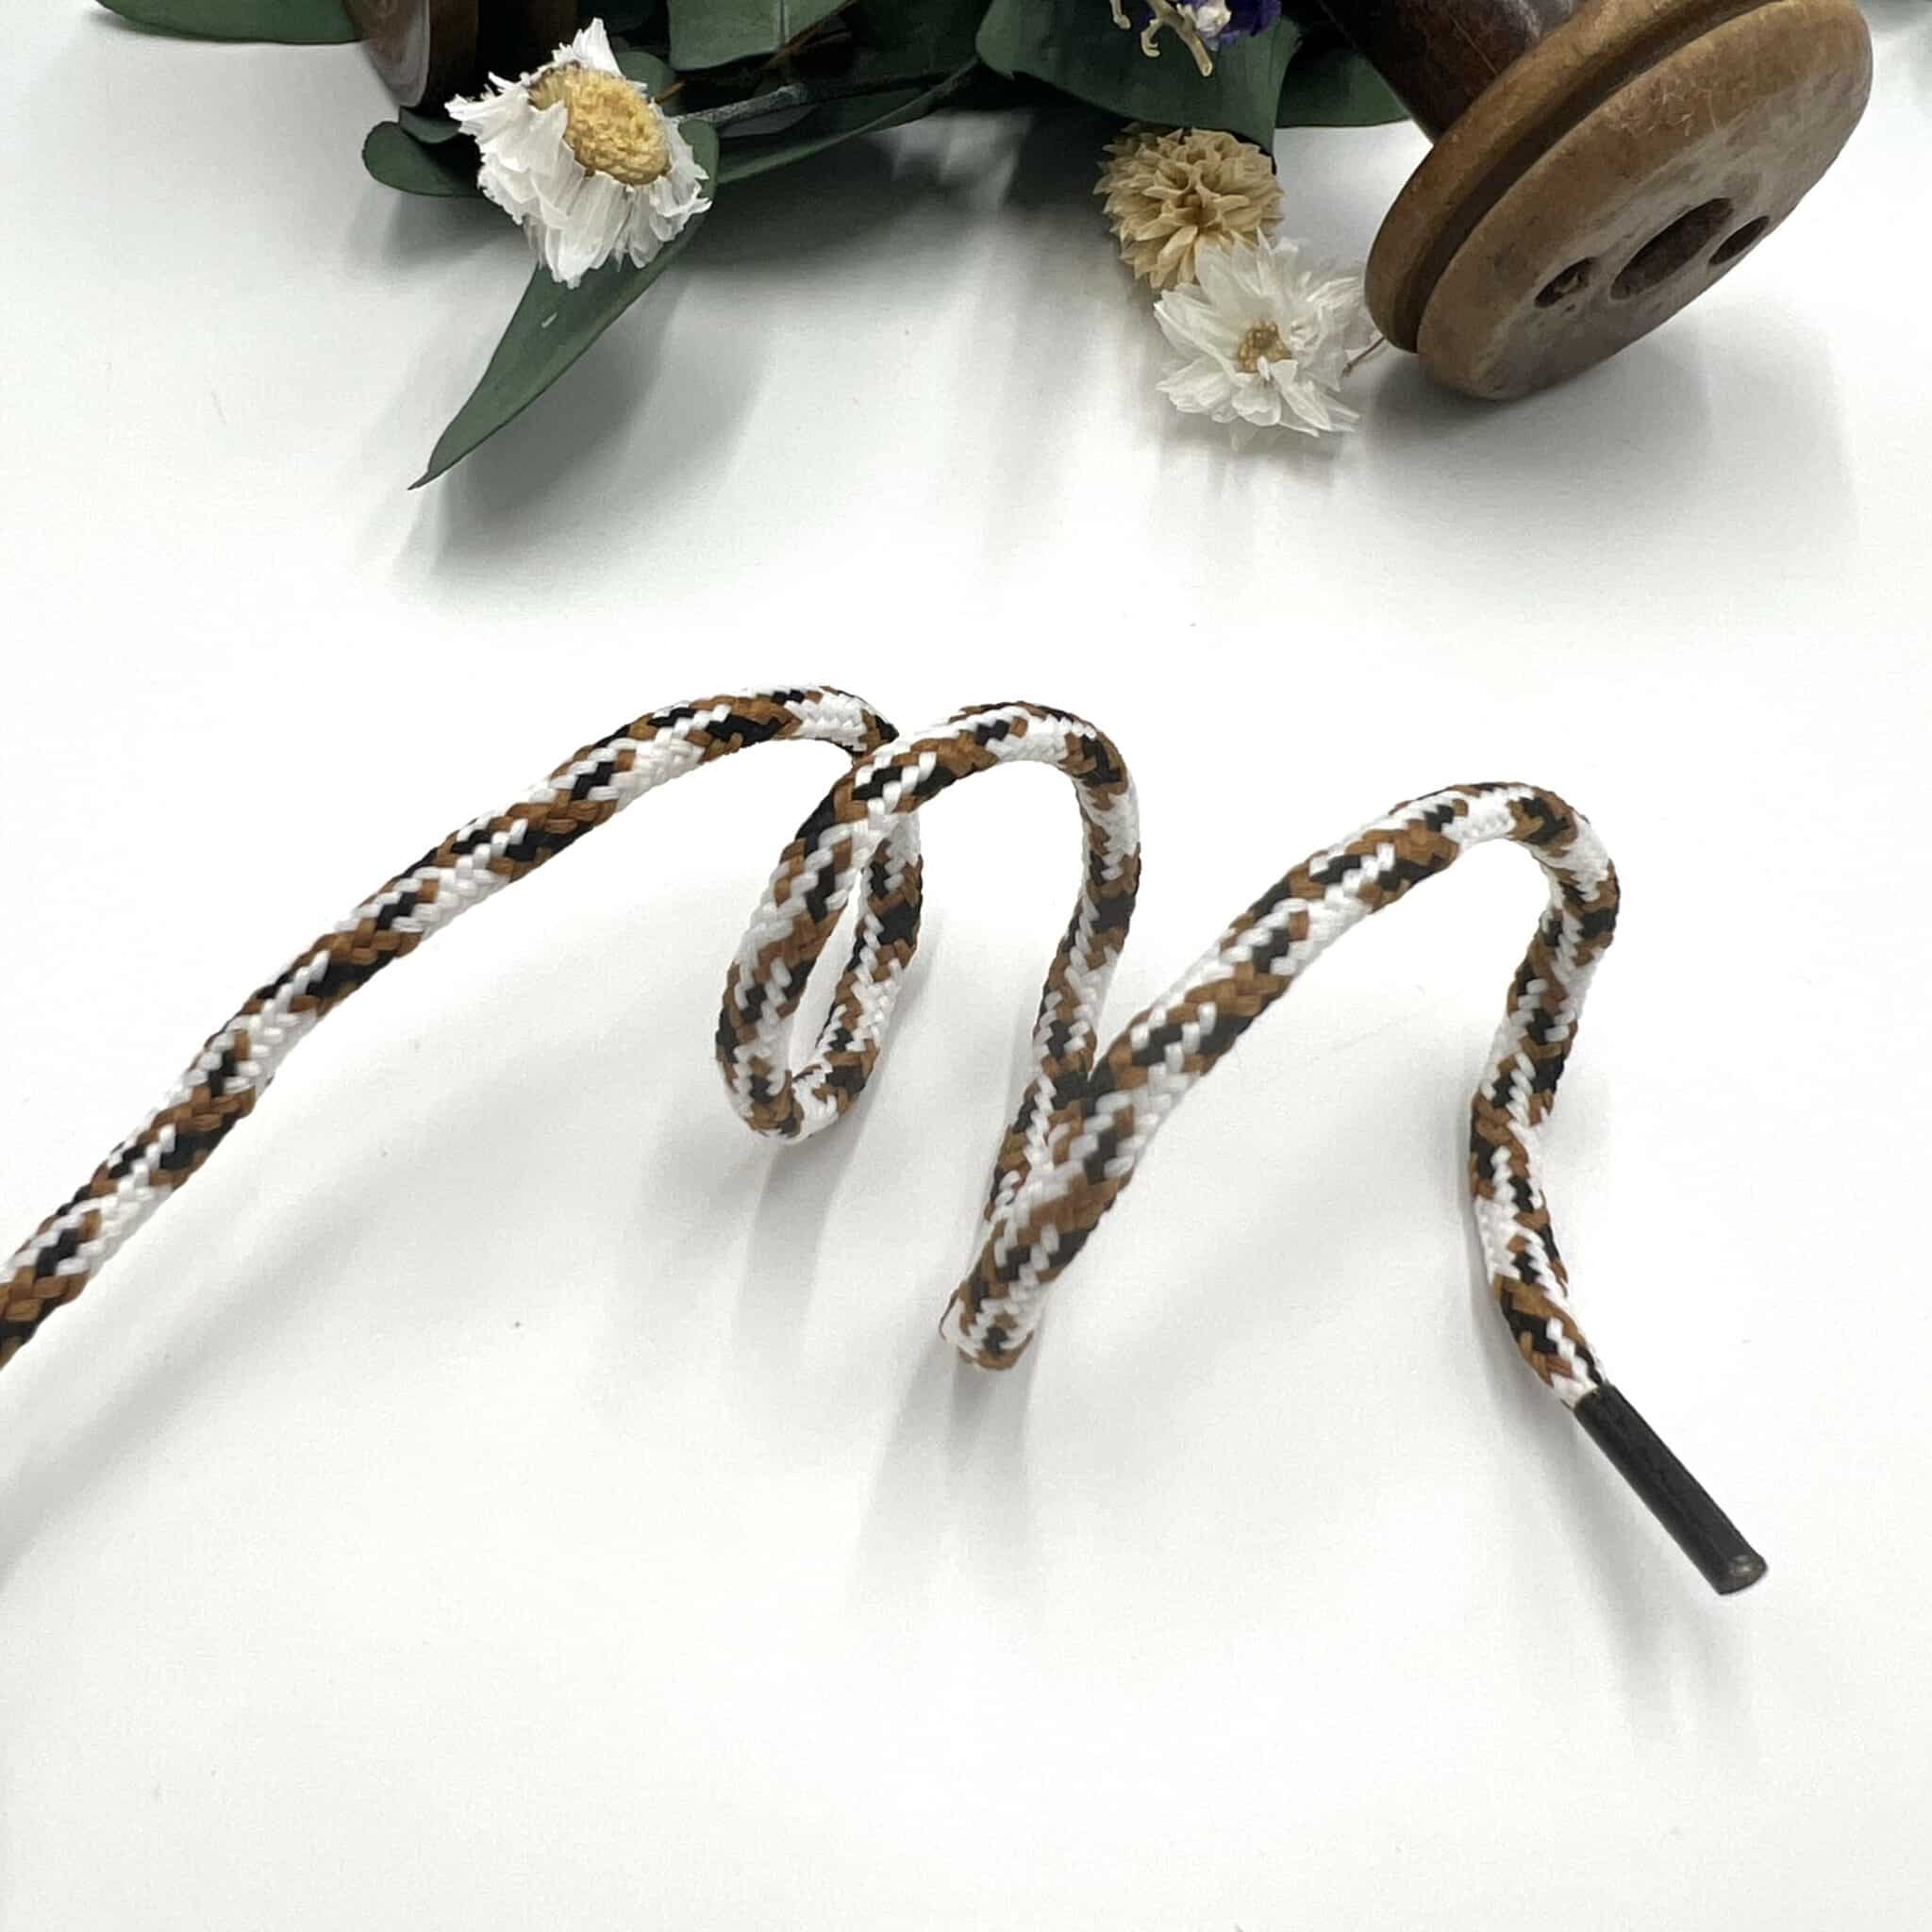 Elaine lacets Made by bobine en polyester marron blanc et noir